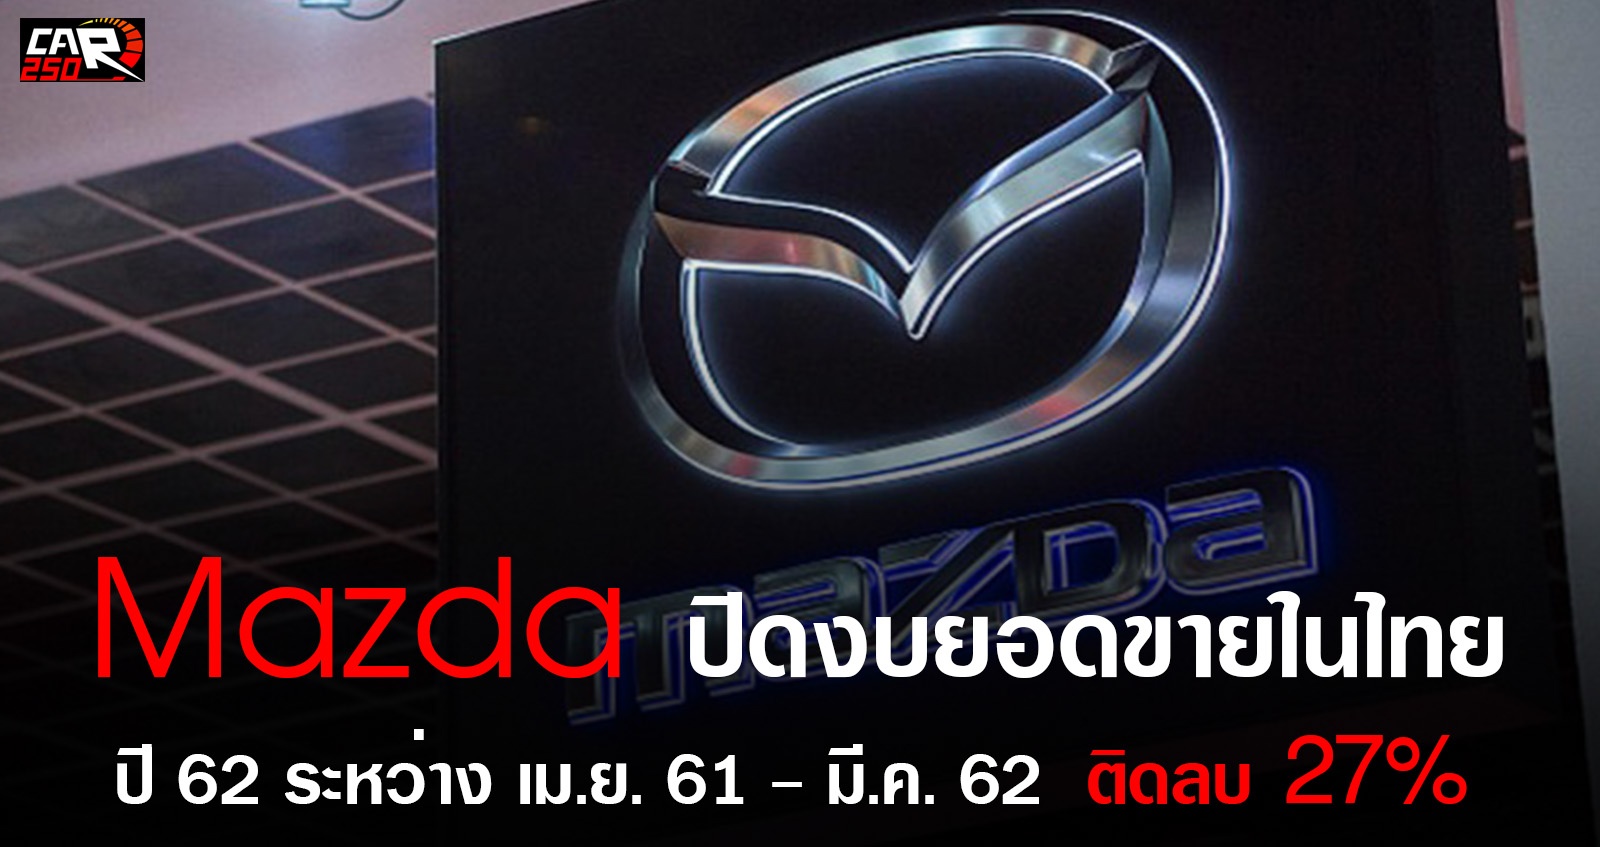 Mazda ปิดงบปี 2562 ยอดขาย ติดลบ 27% ระหว่าง เมษายน 61- มีนาคม 62